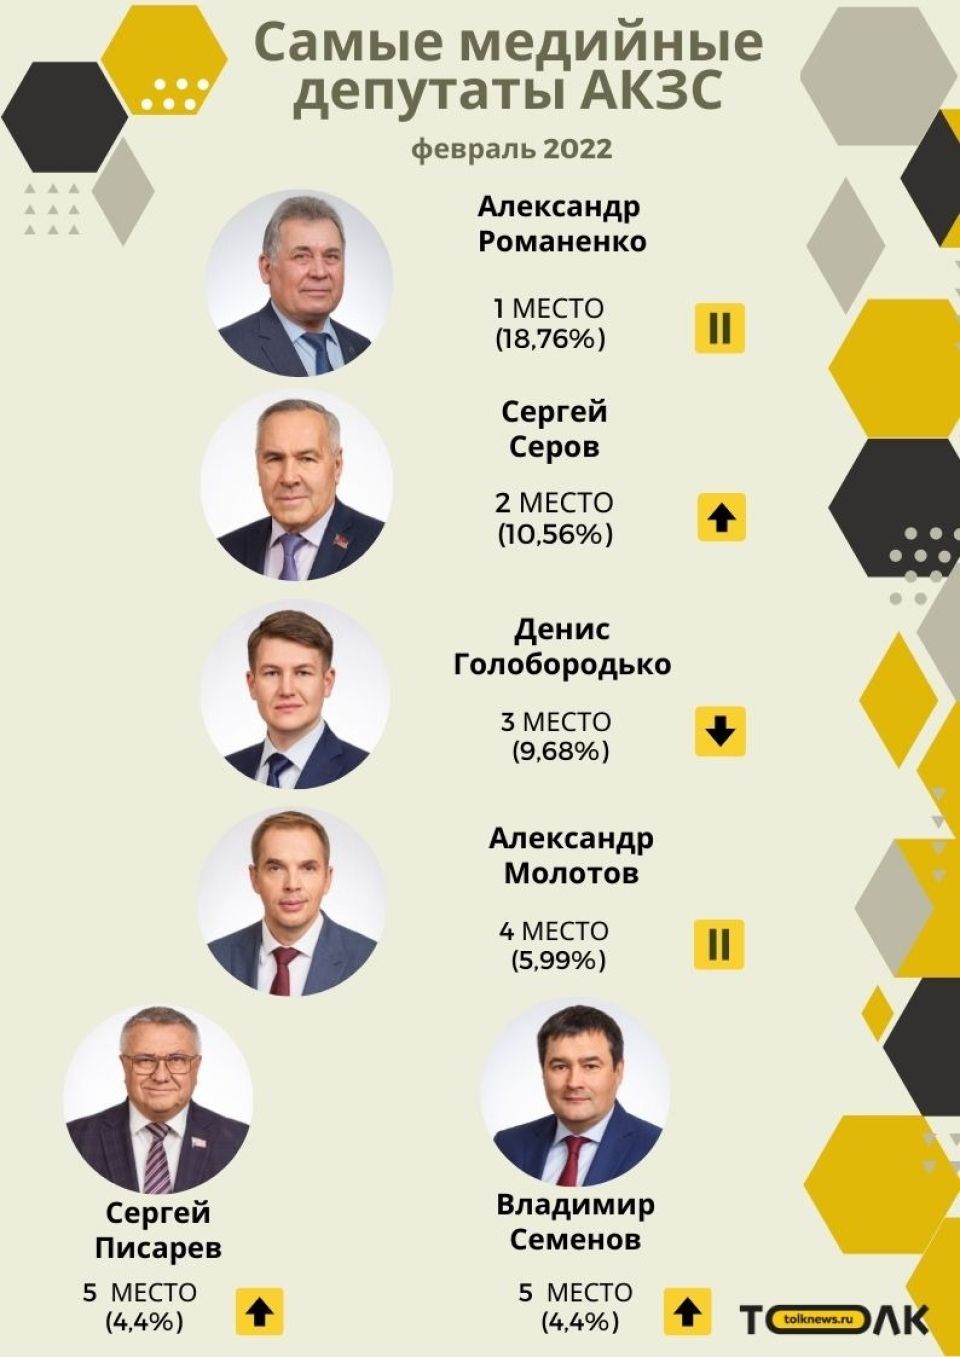 Рейтинг медийности депутатов АКЗС в феврале 2022 года